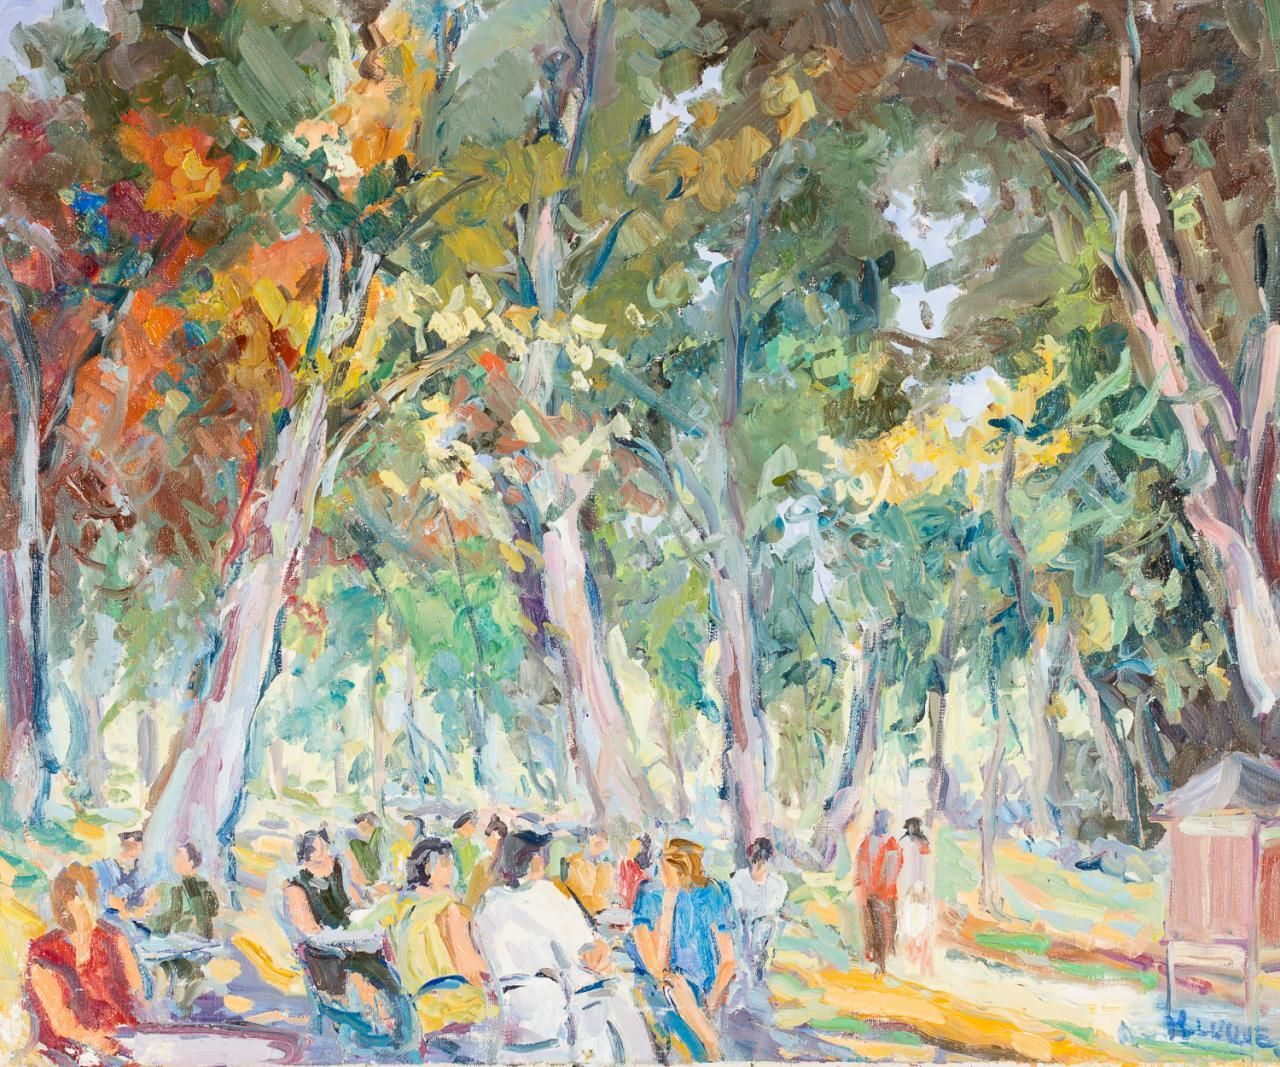 MONTSERRAT LUQUE (S. XX) 在公园里
布面油画
50 x 60 cm
右下角有签名："M．LUQUE"。